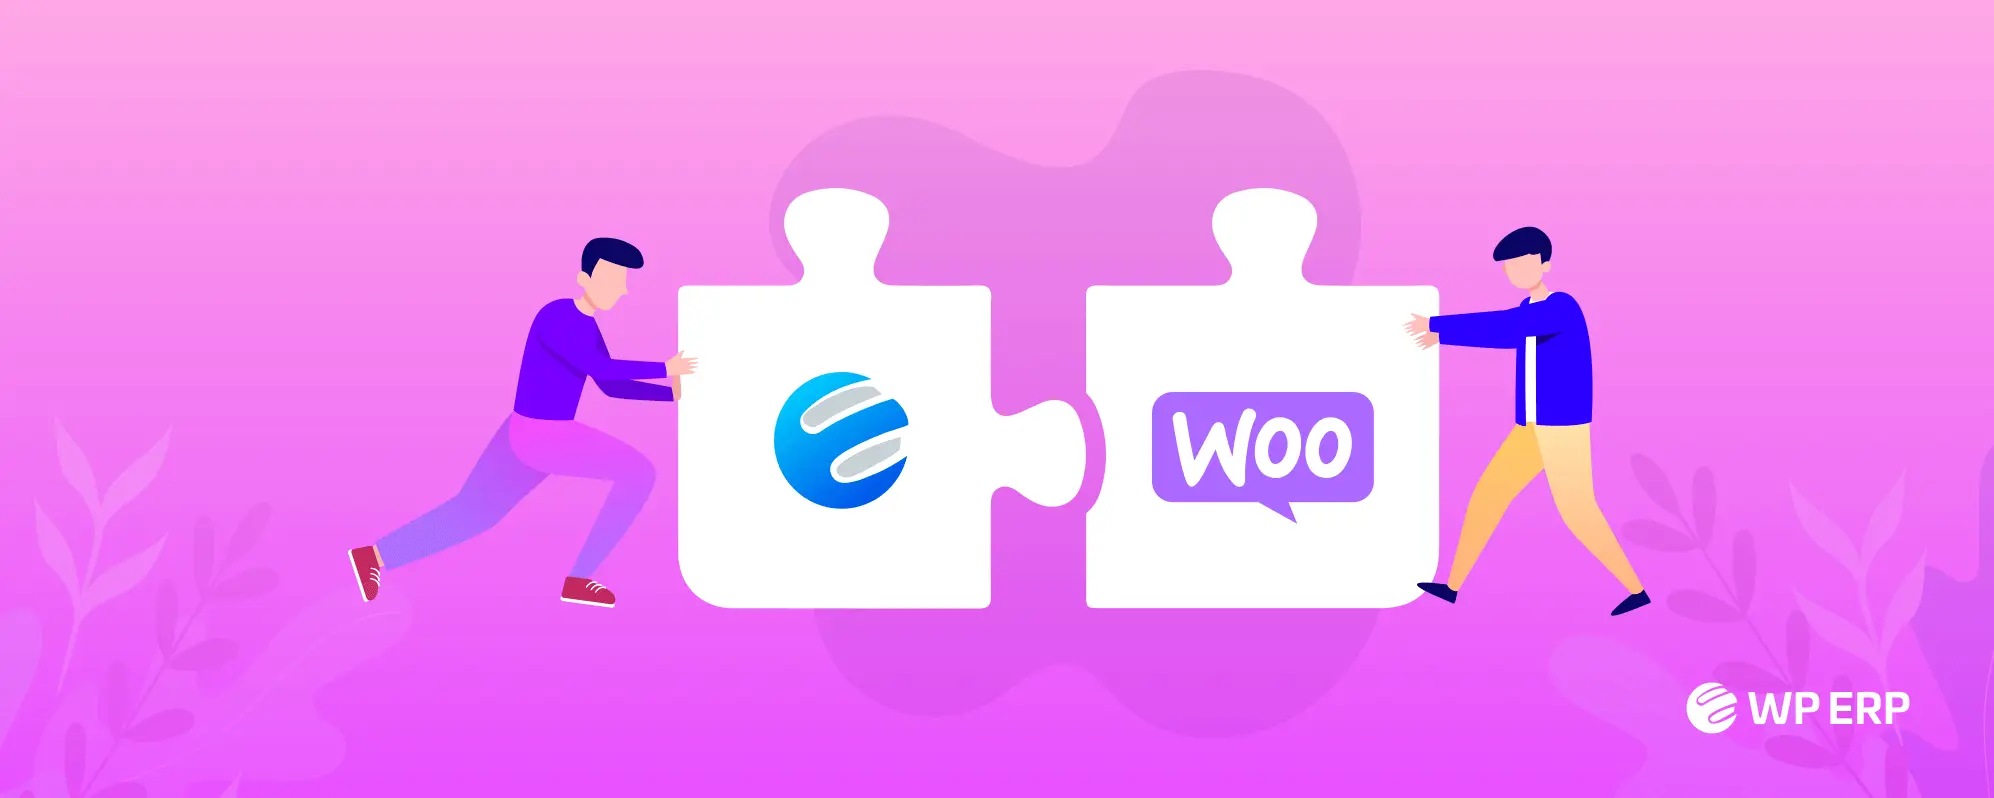 دانلود افزونه WP ERP WooCommerce Integration